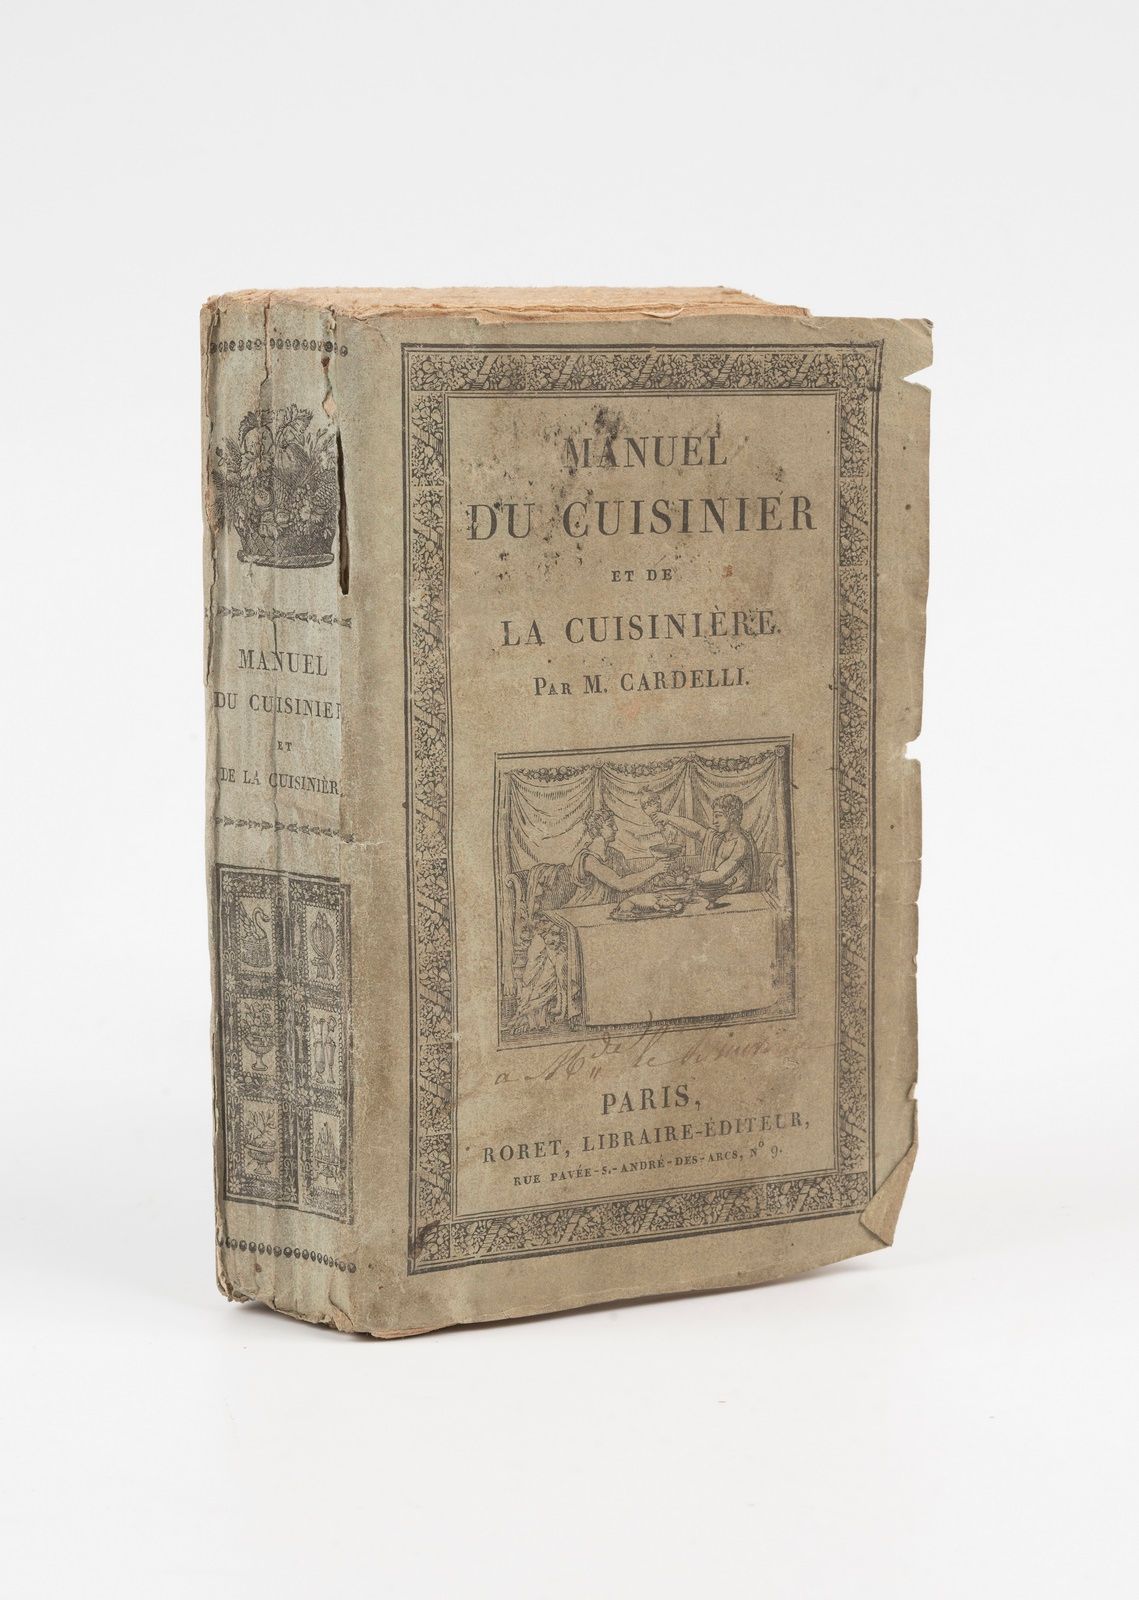 Null 卡德利。烹饪师和烹饪师手册，用于城市和营地的使用。巴黎，罗雷特，1822年。16开本，平装，未作修饰。

XII页，348页。

第一版，有一张正面插&hellip;